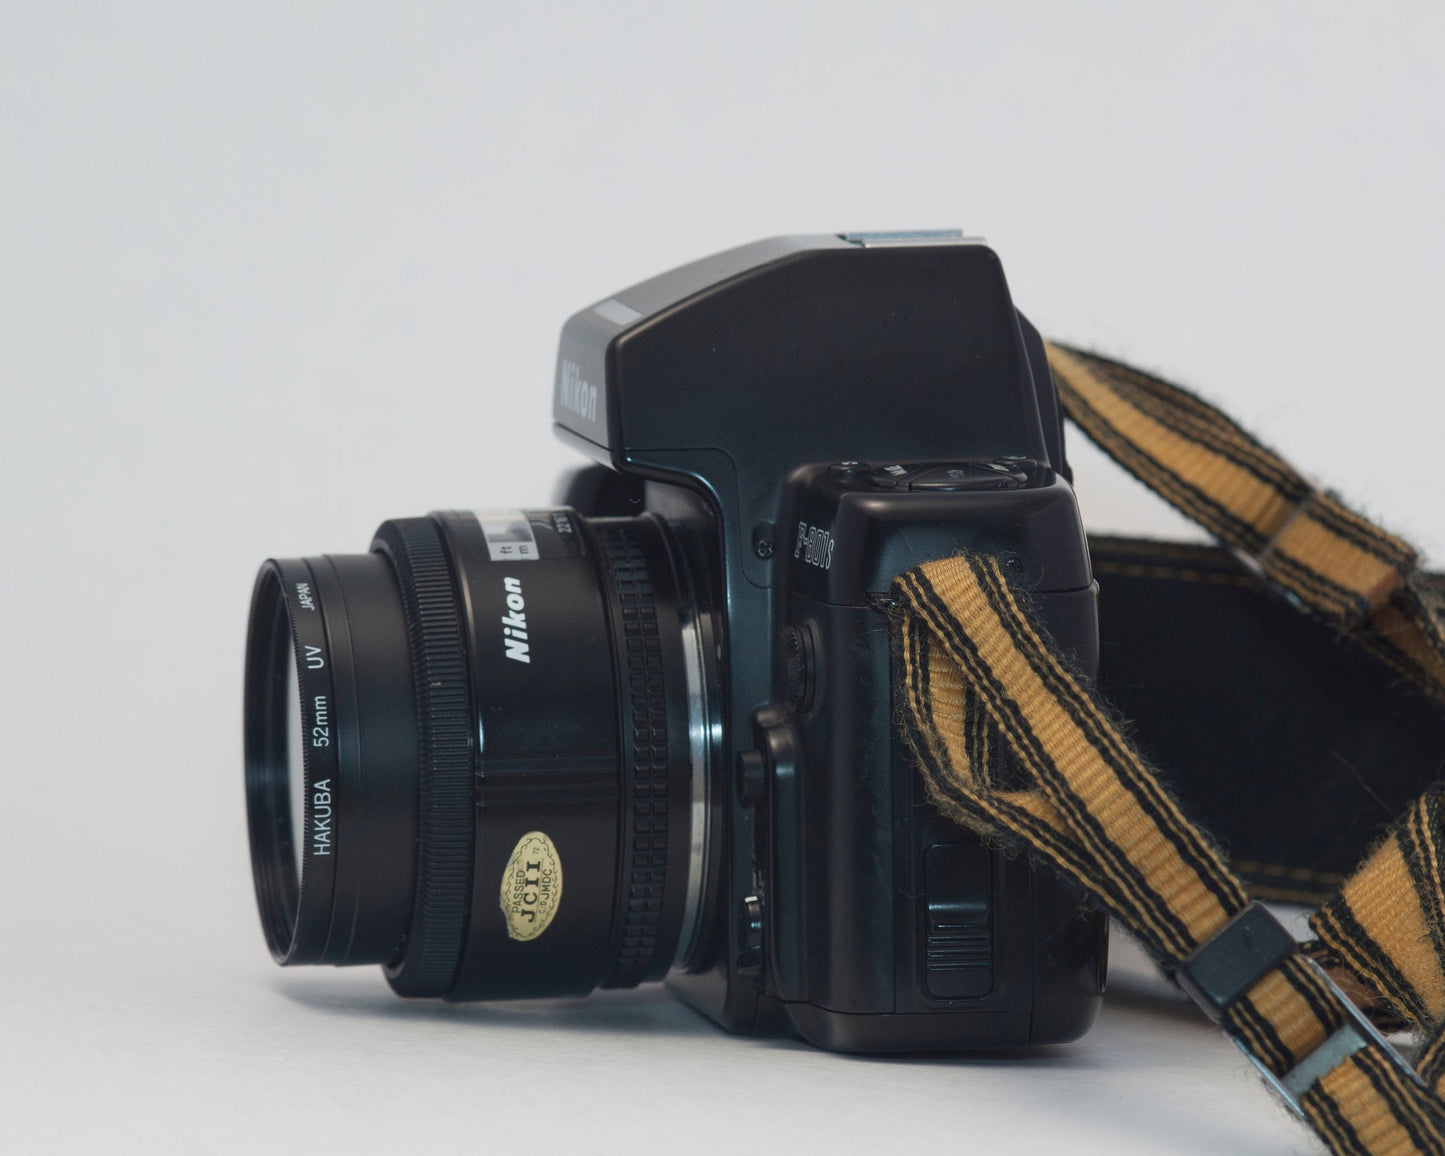 Reflex Nikon F-801s avec objectif 50 mm f1.8 AF Nikkor